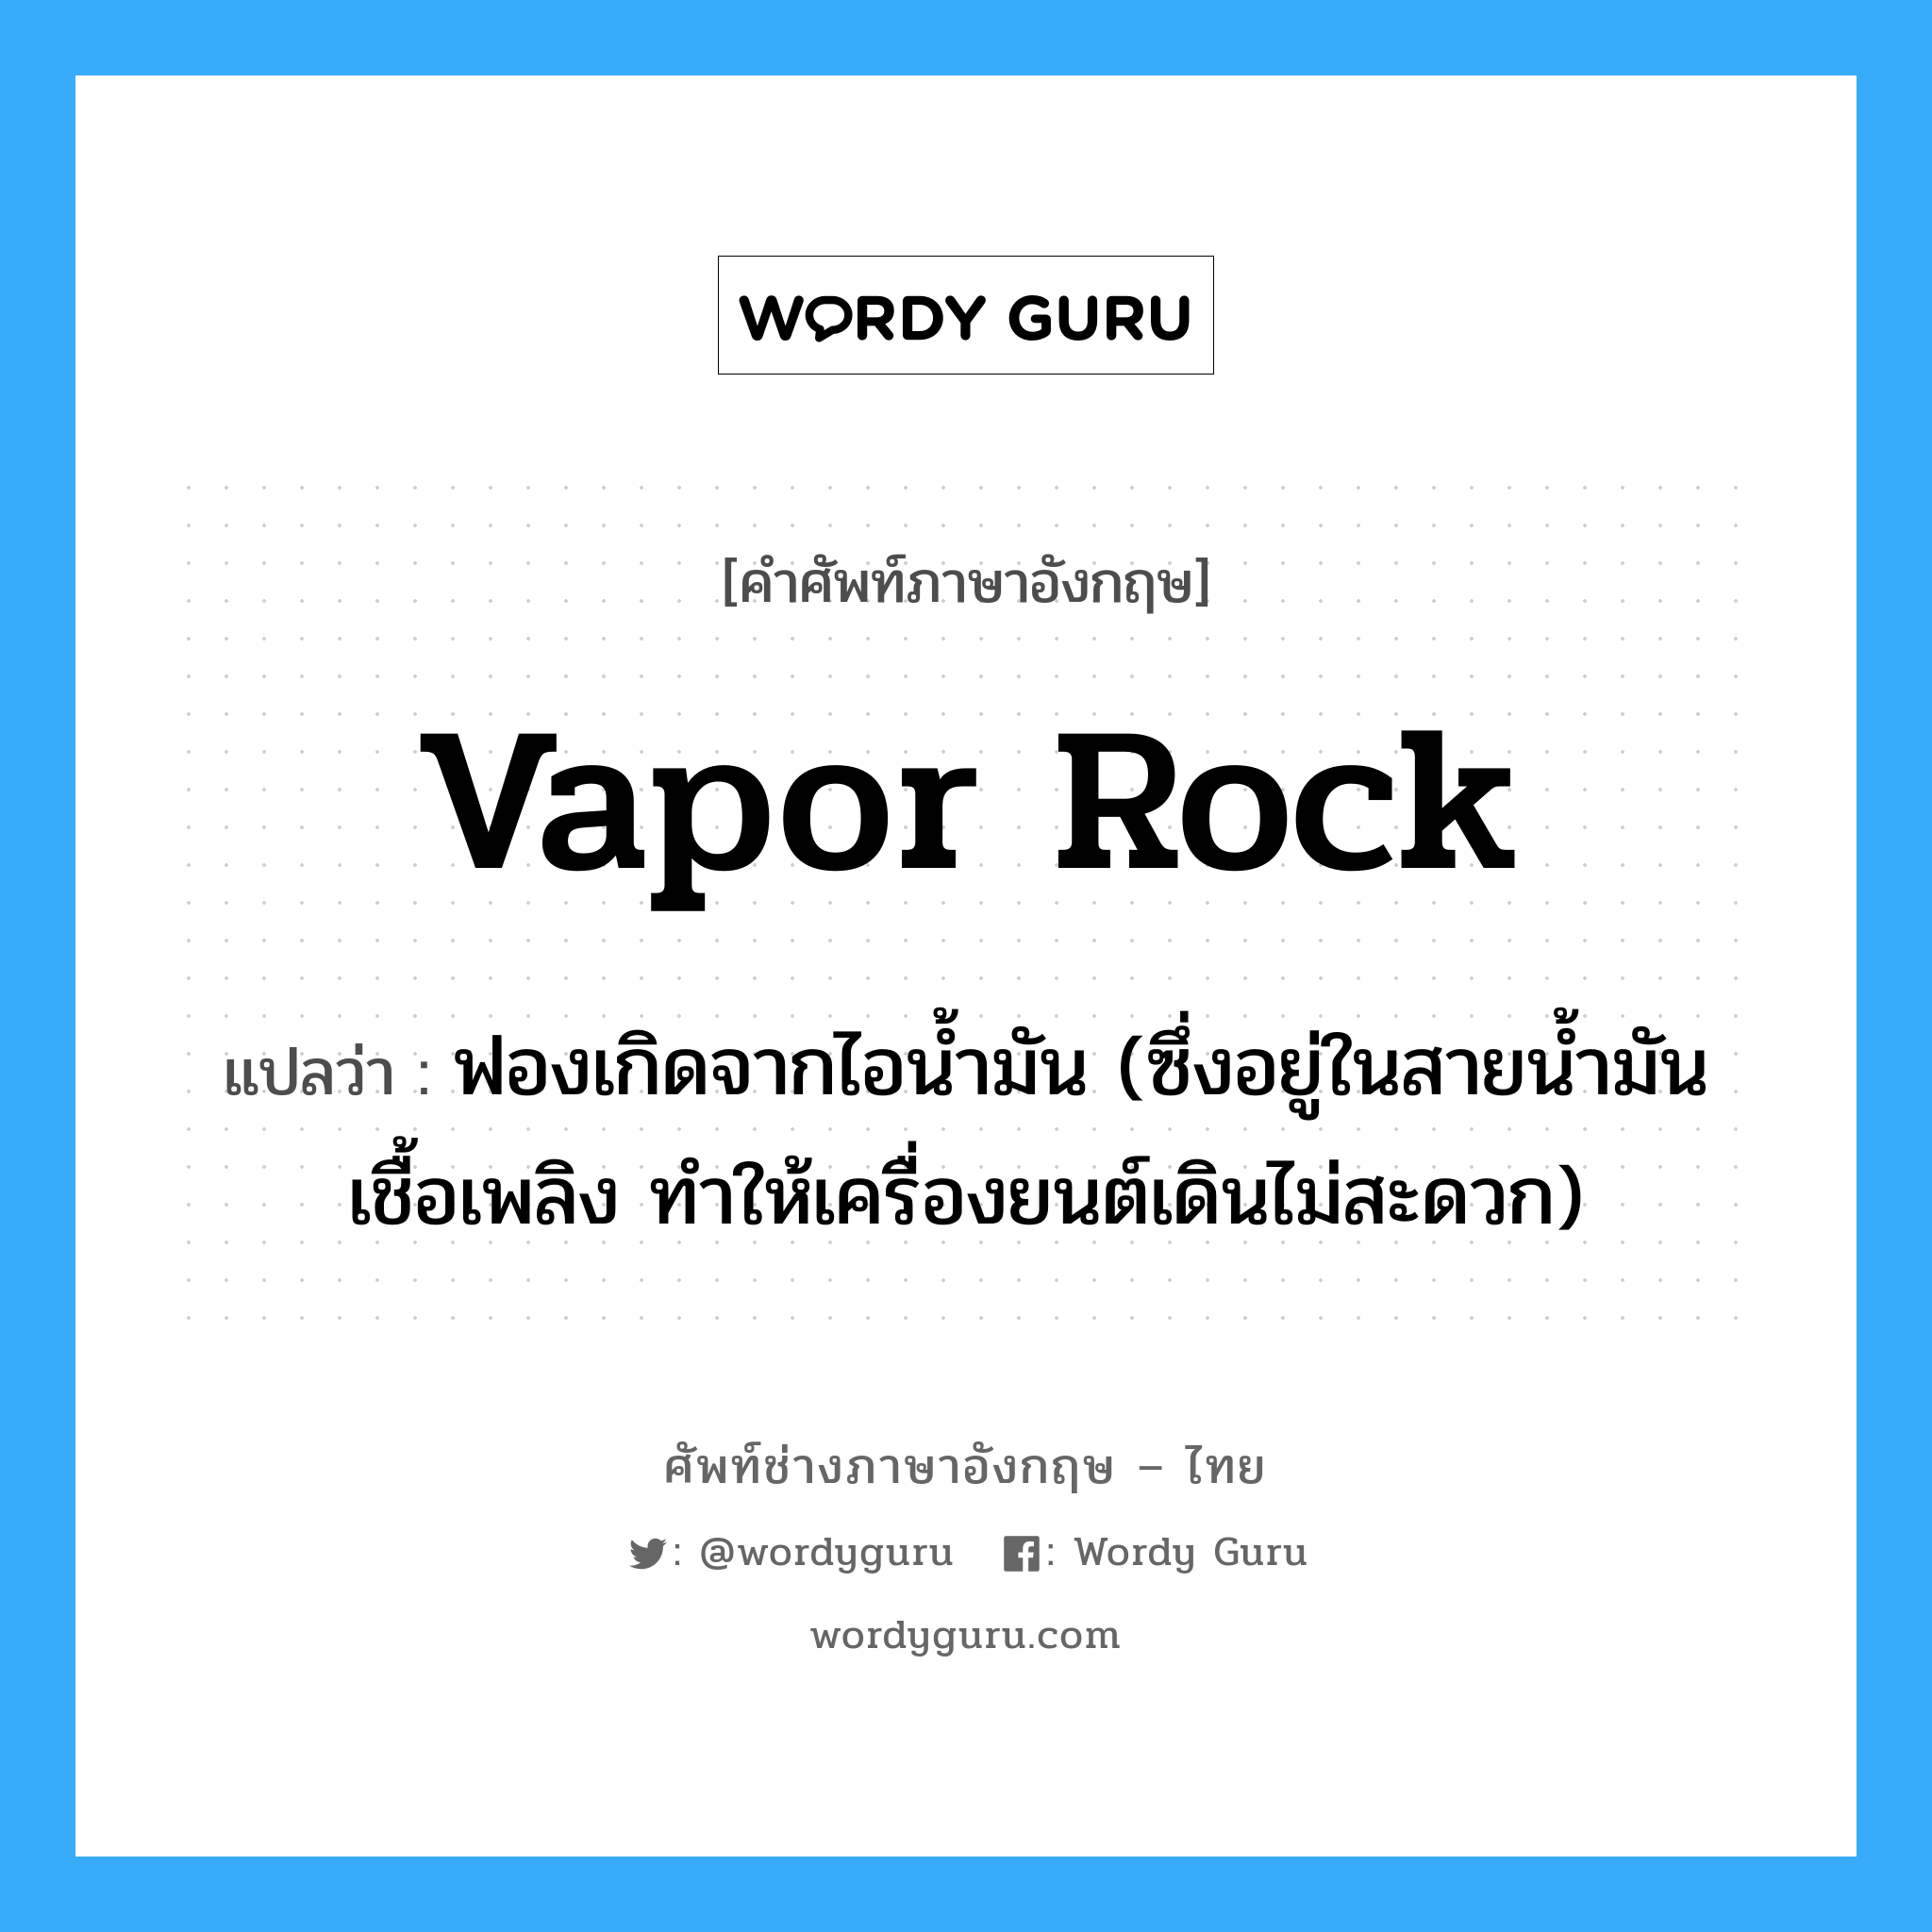 vapor rock แปลว่า?, คำศัพท์ช่างภาษาอังกฤษ - ไทย vapor rock คำศัพท์ภาษาอังกฤษ vapor rock แปลว่า ฟองเกิดจากไอน้ำมัน (ซึ่งอยู่ในสายน้ำมันเชื้อเพลิง ทำให้เครื่องยนต์เดินไม่สะดวก)